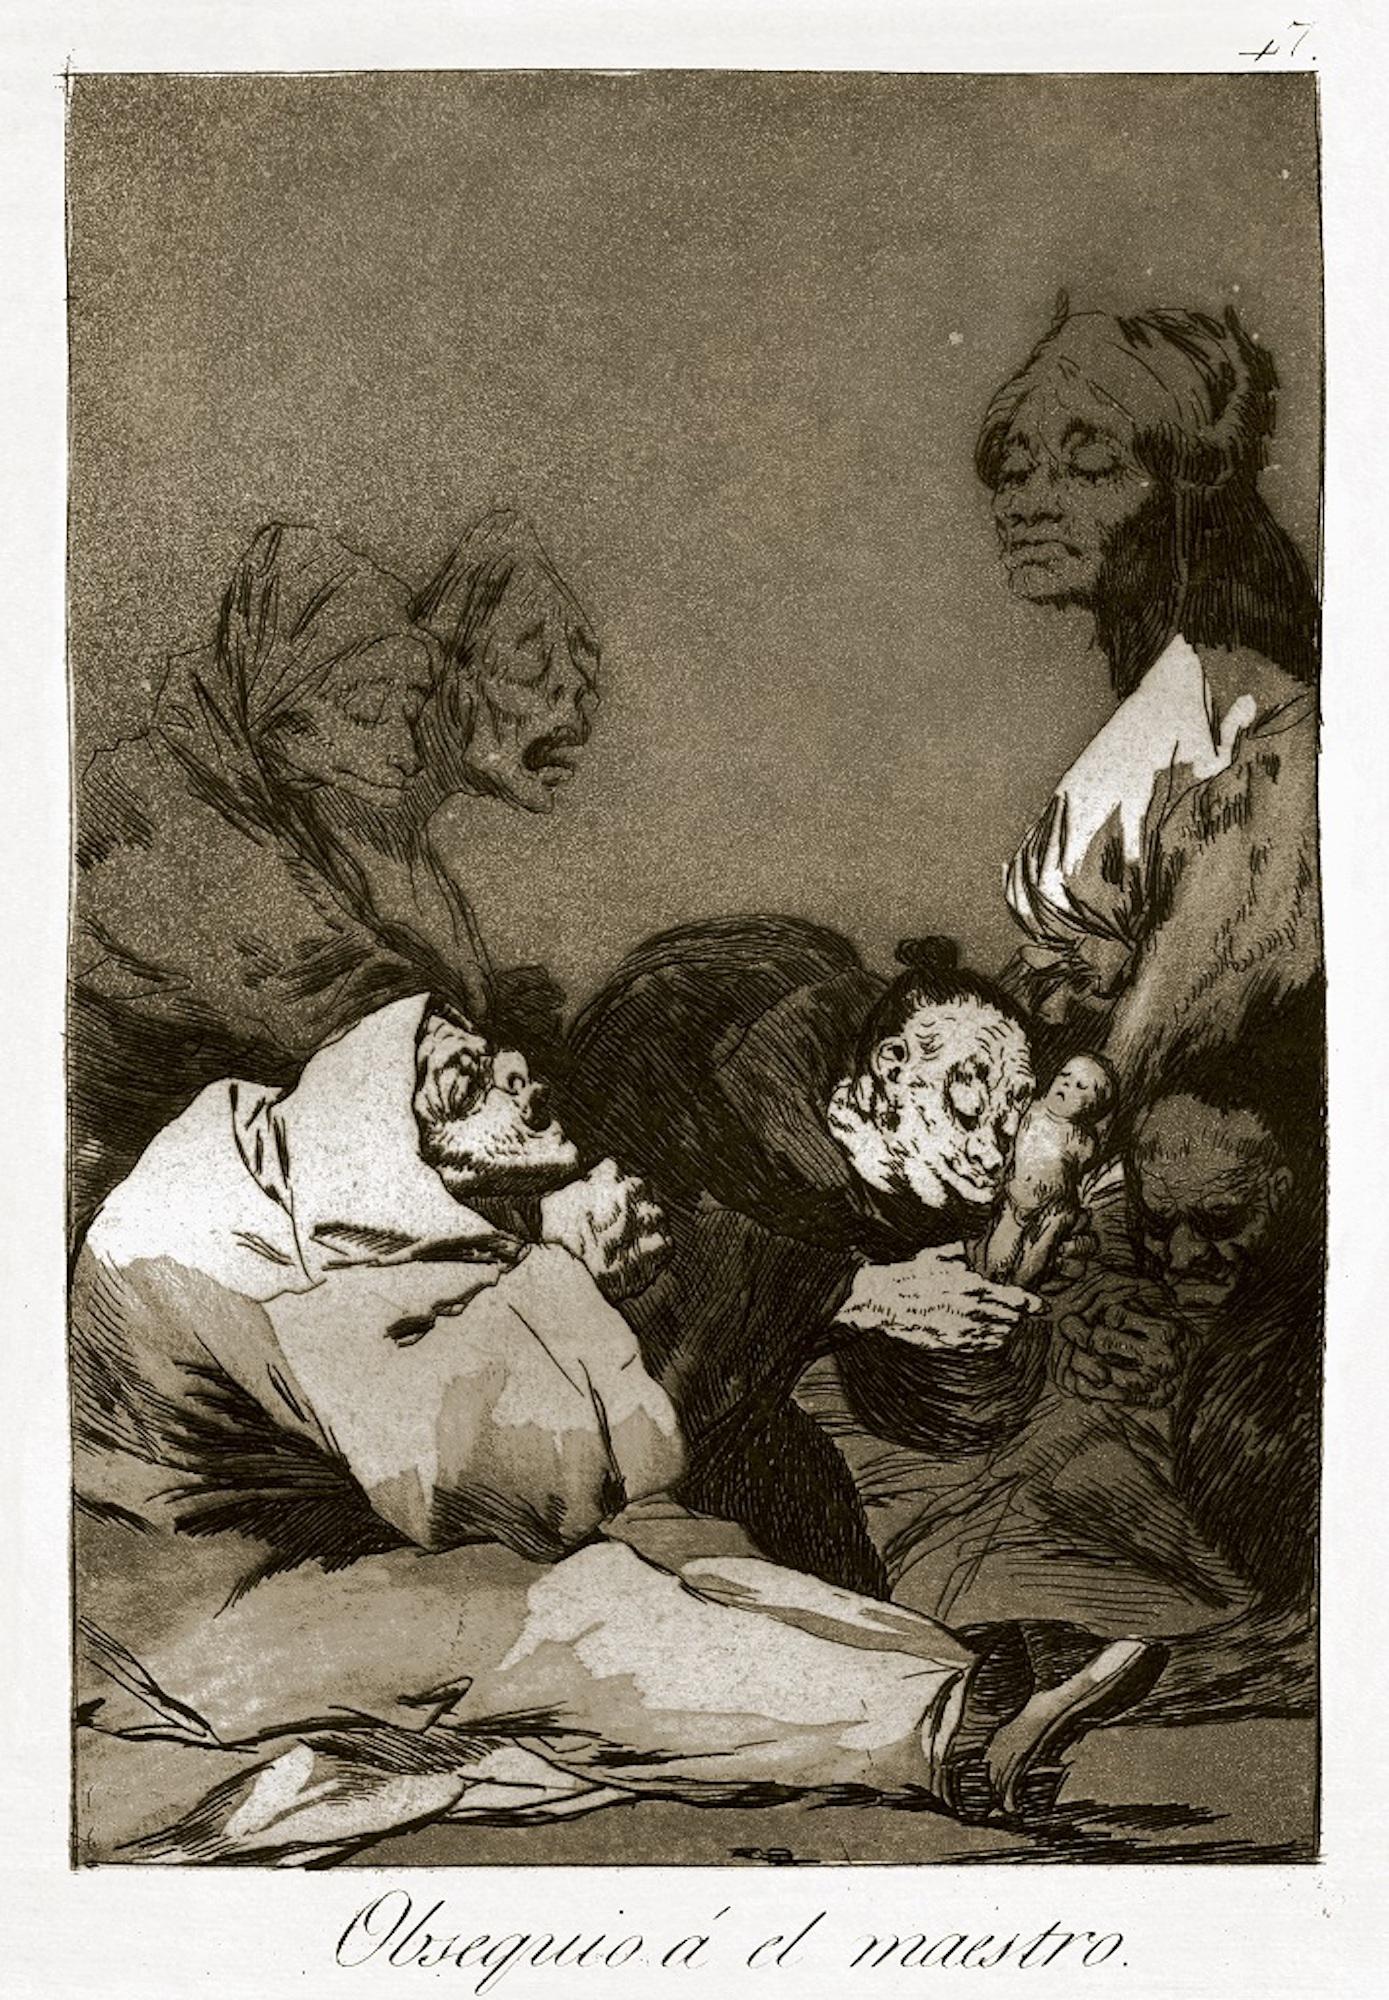 Obsequio a el Maestro est une œuvre originale réalisée par Francisco Goya et publiée pour la première fois en 1799.

Eau-forte sur papier vélin.

Cette illustration appartient à la troisième édition publiée en 1868 par la Calcografia National pour